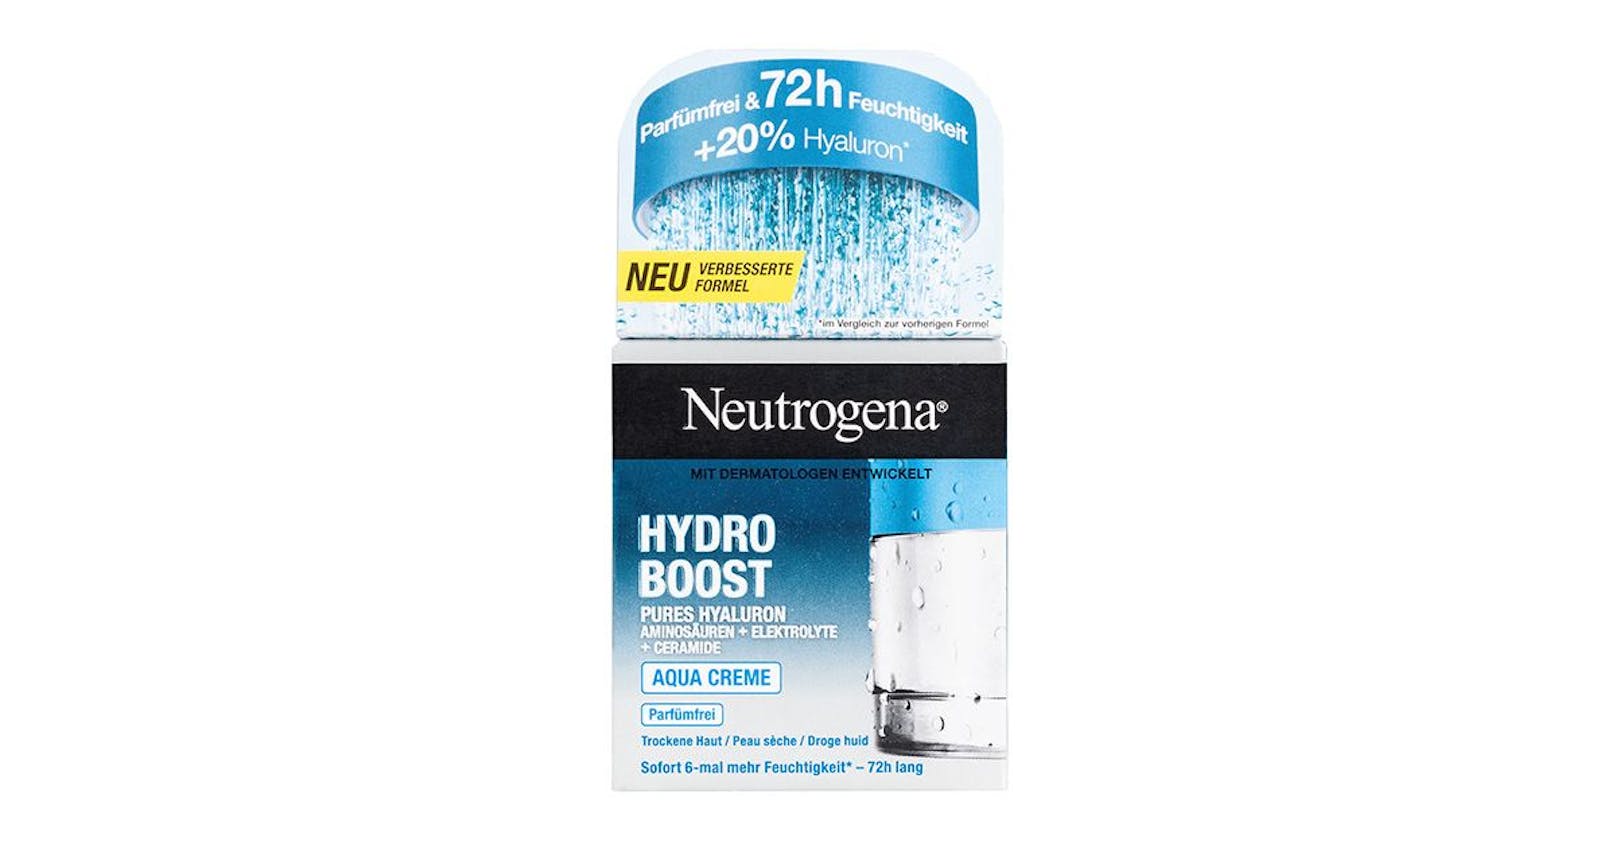 <strong>Platz 1:</strong> Neutrogena Hydro Boost Aqua Creme (Gut 1,9) um 10 Euro.&nbsp;"Nur ihr gelingt es, die Haut sehr gut mit Feuchtigkeit zu versorgen", lautet die Begründung für das Produkt im mittleren Preissegment.